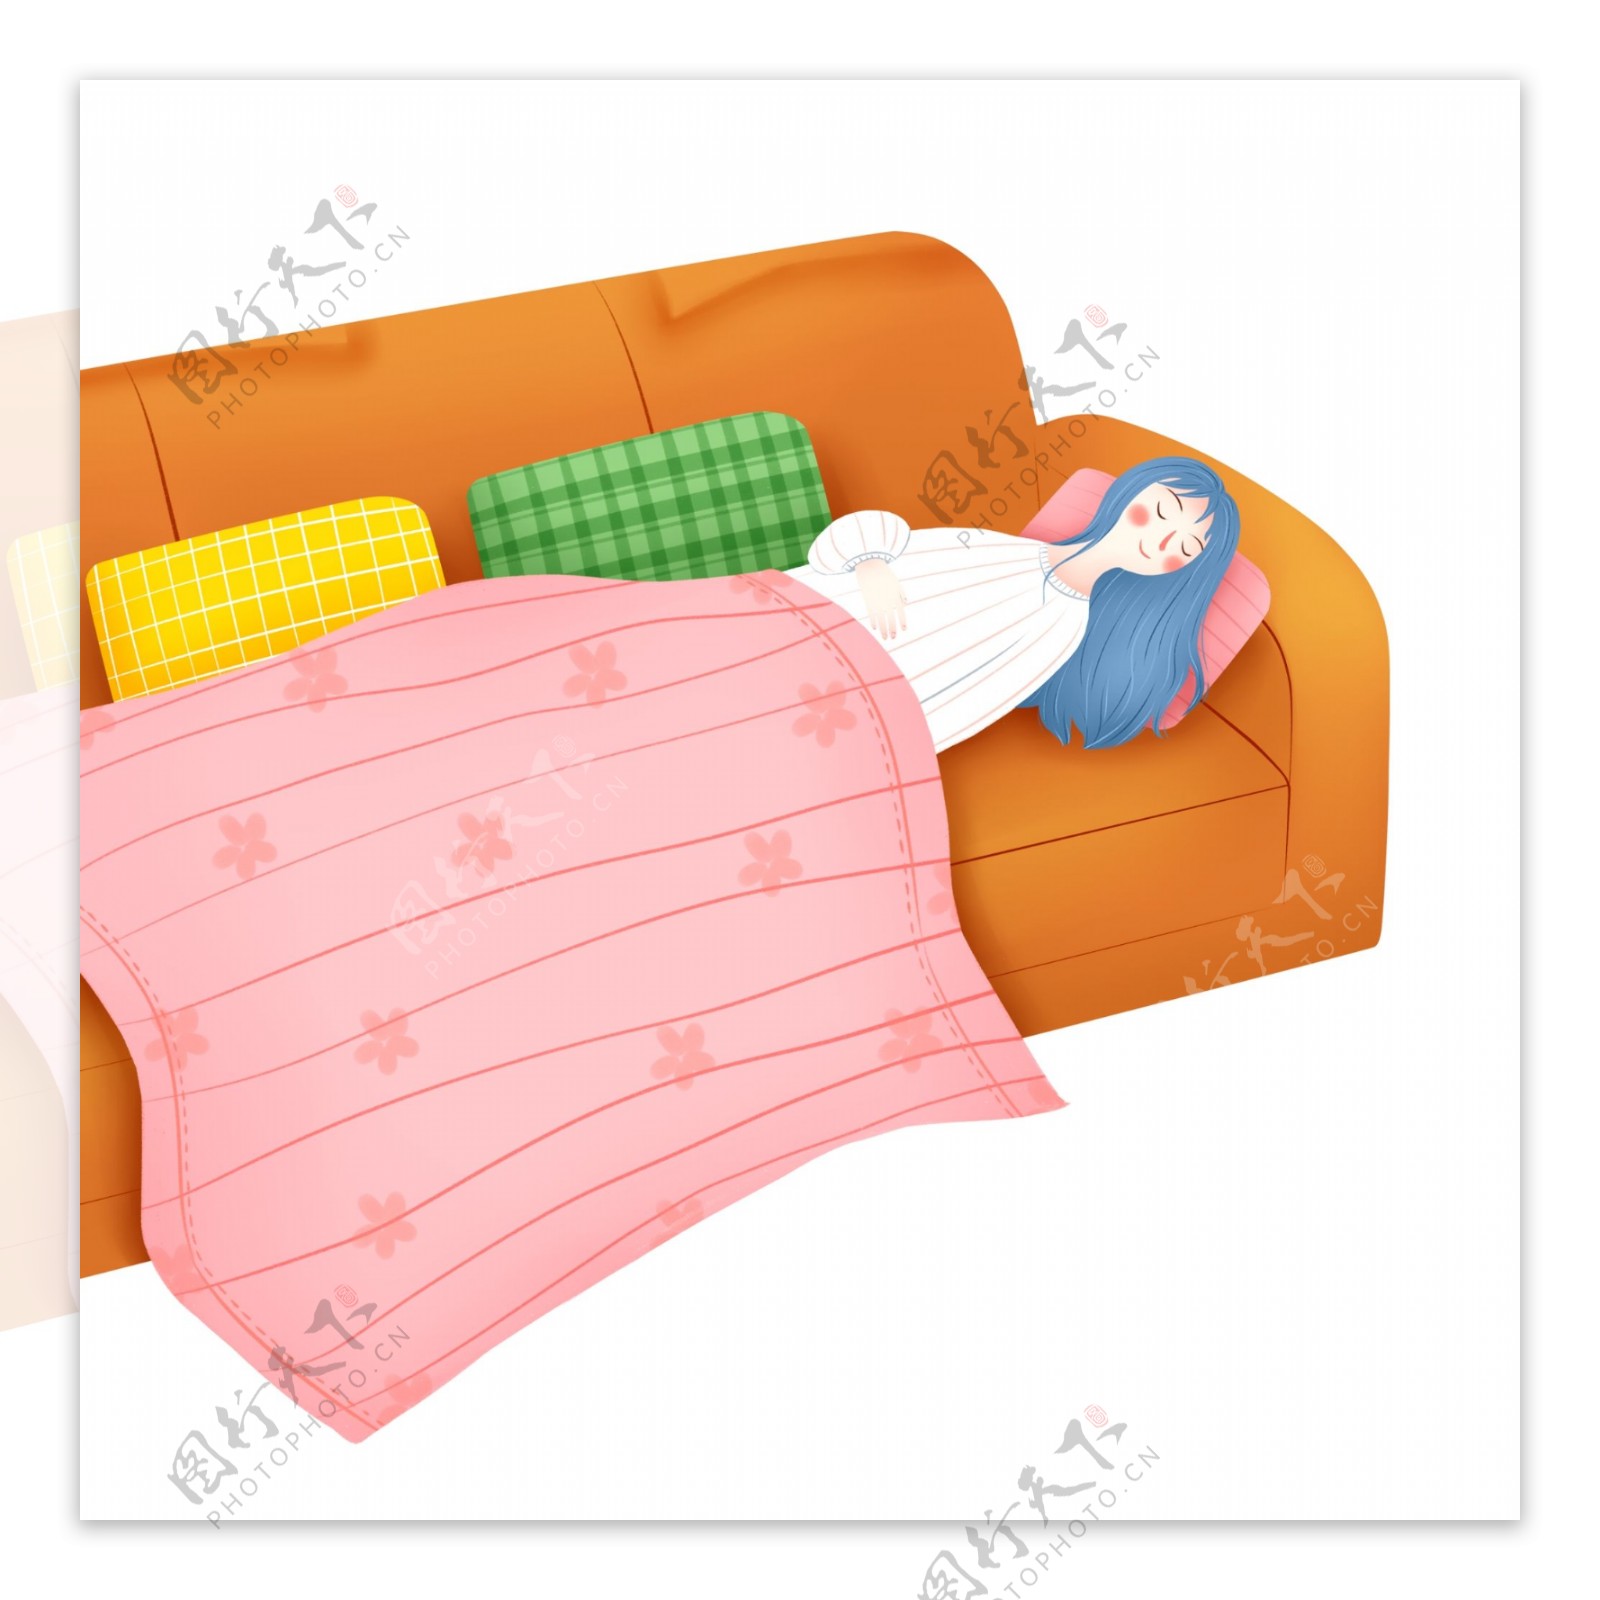 彩绘小清新沙发上盖着毯子睡觉的女孩